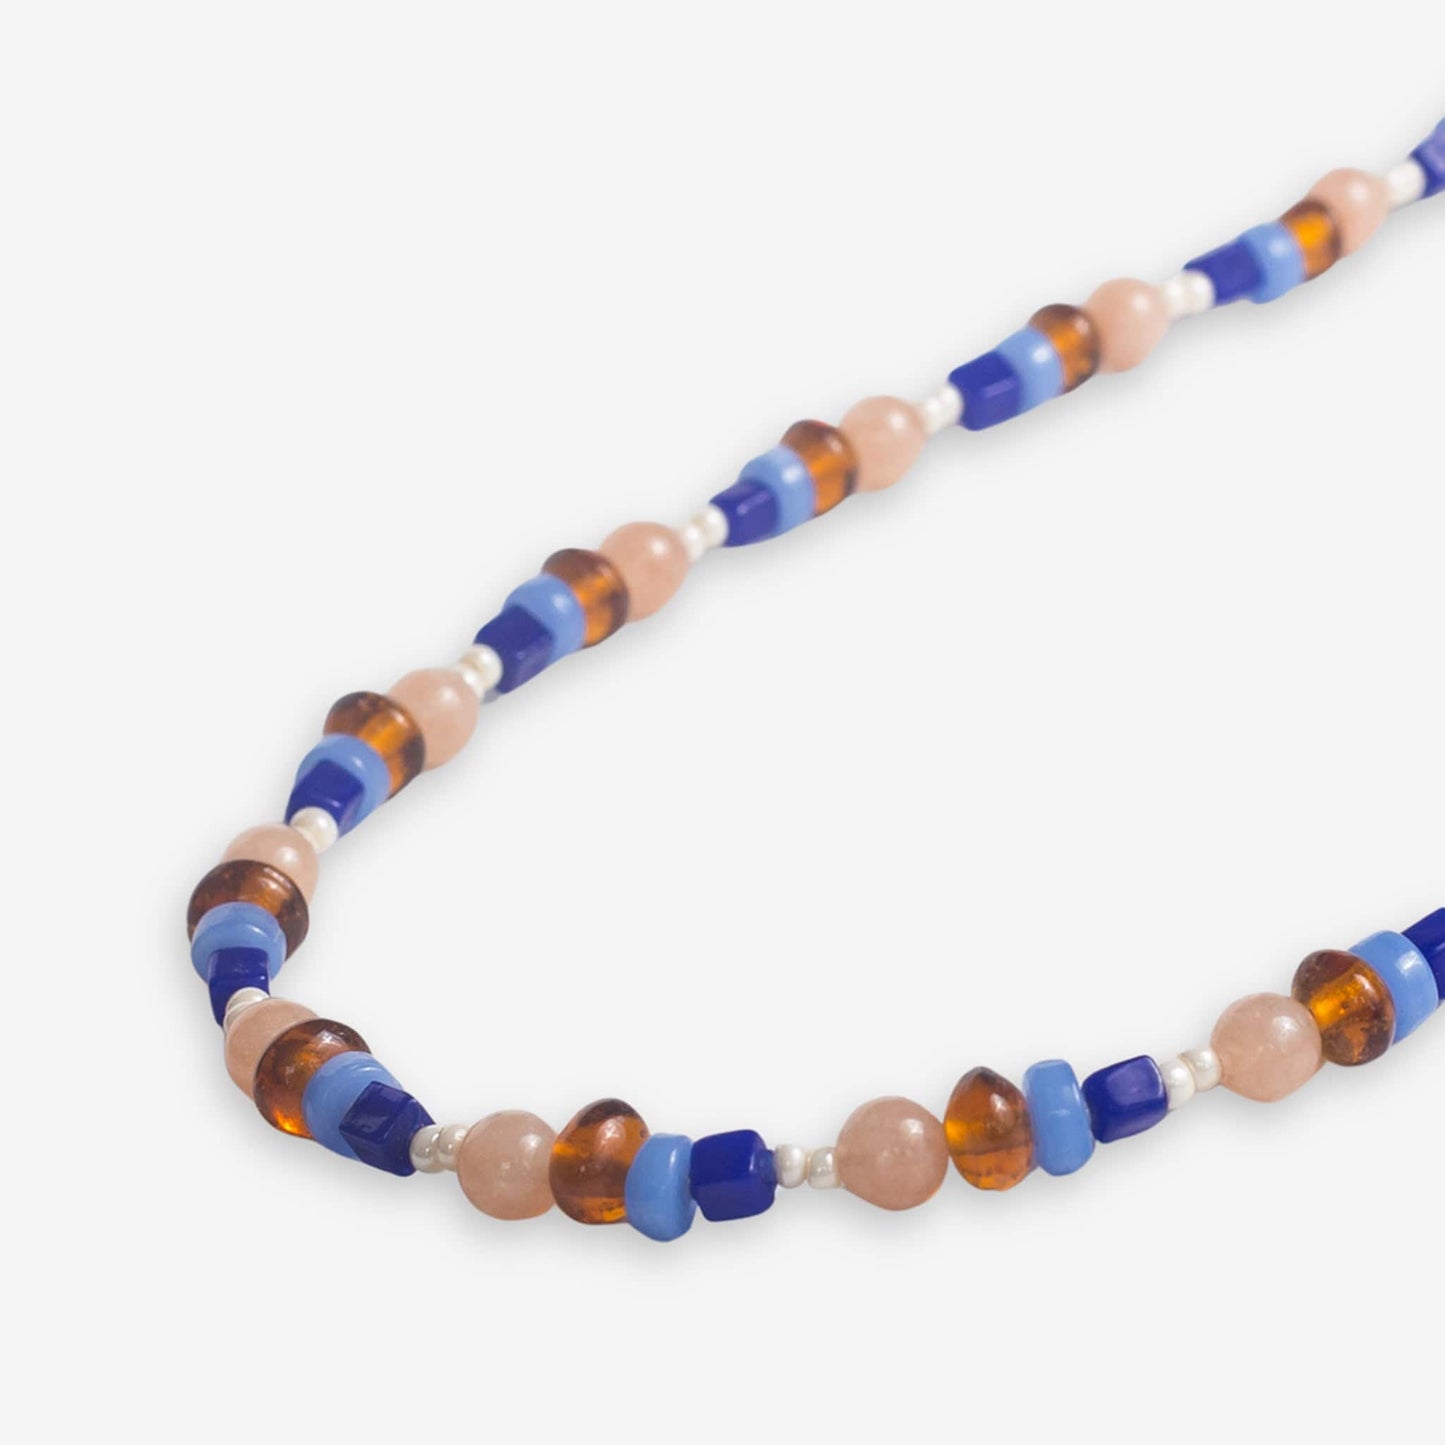 Sylvia Mixed Beads And Stones Long Necklace Sedona